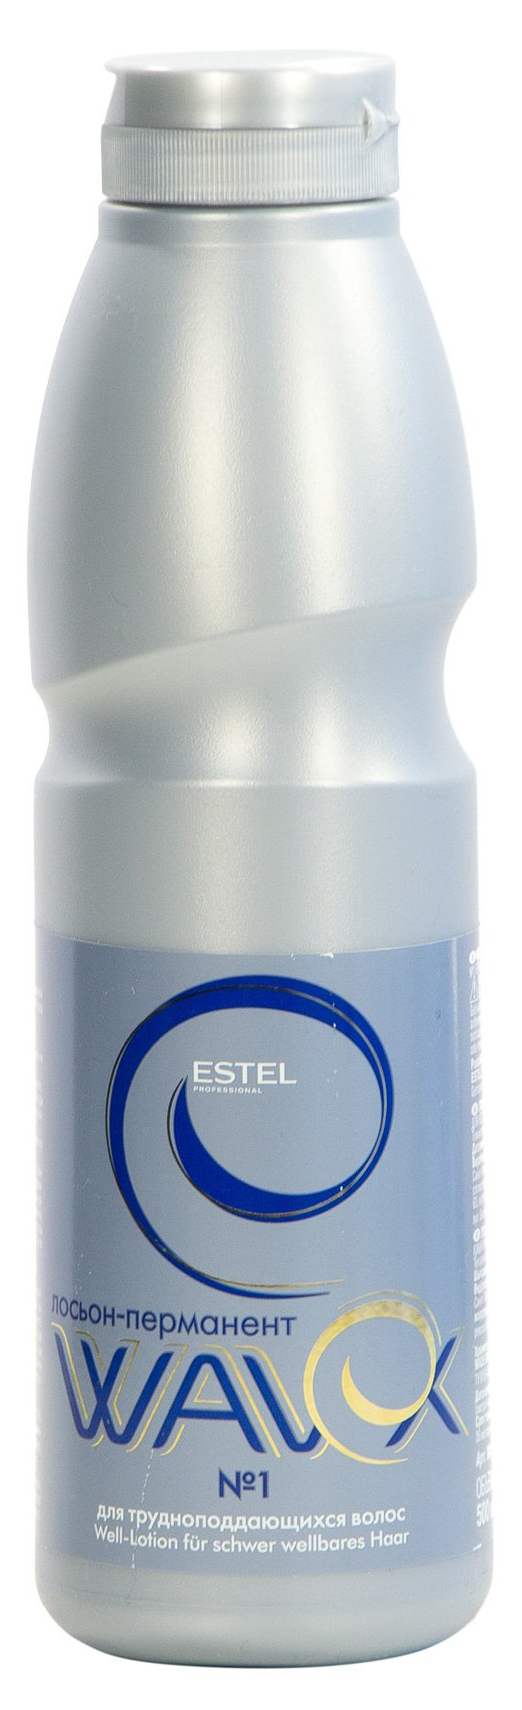 Лосьон-перманент Estel Wavex 500 мл №1 estel professional набор для химической завивки для нормальных волос 2 100 мл